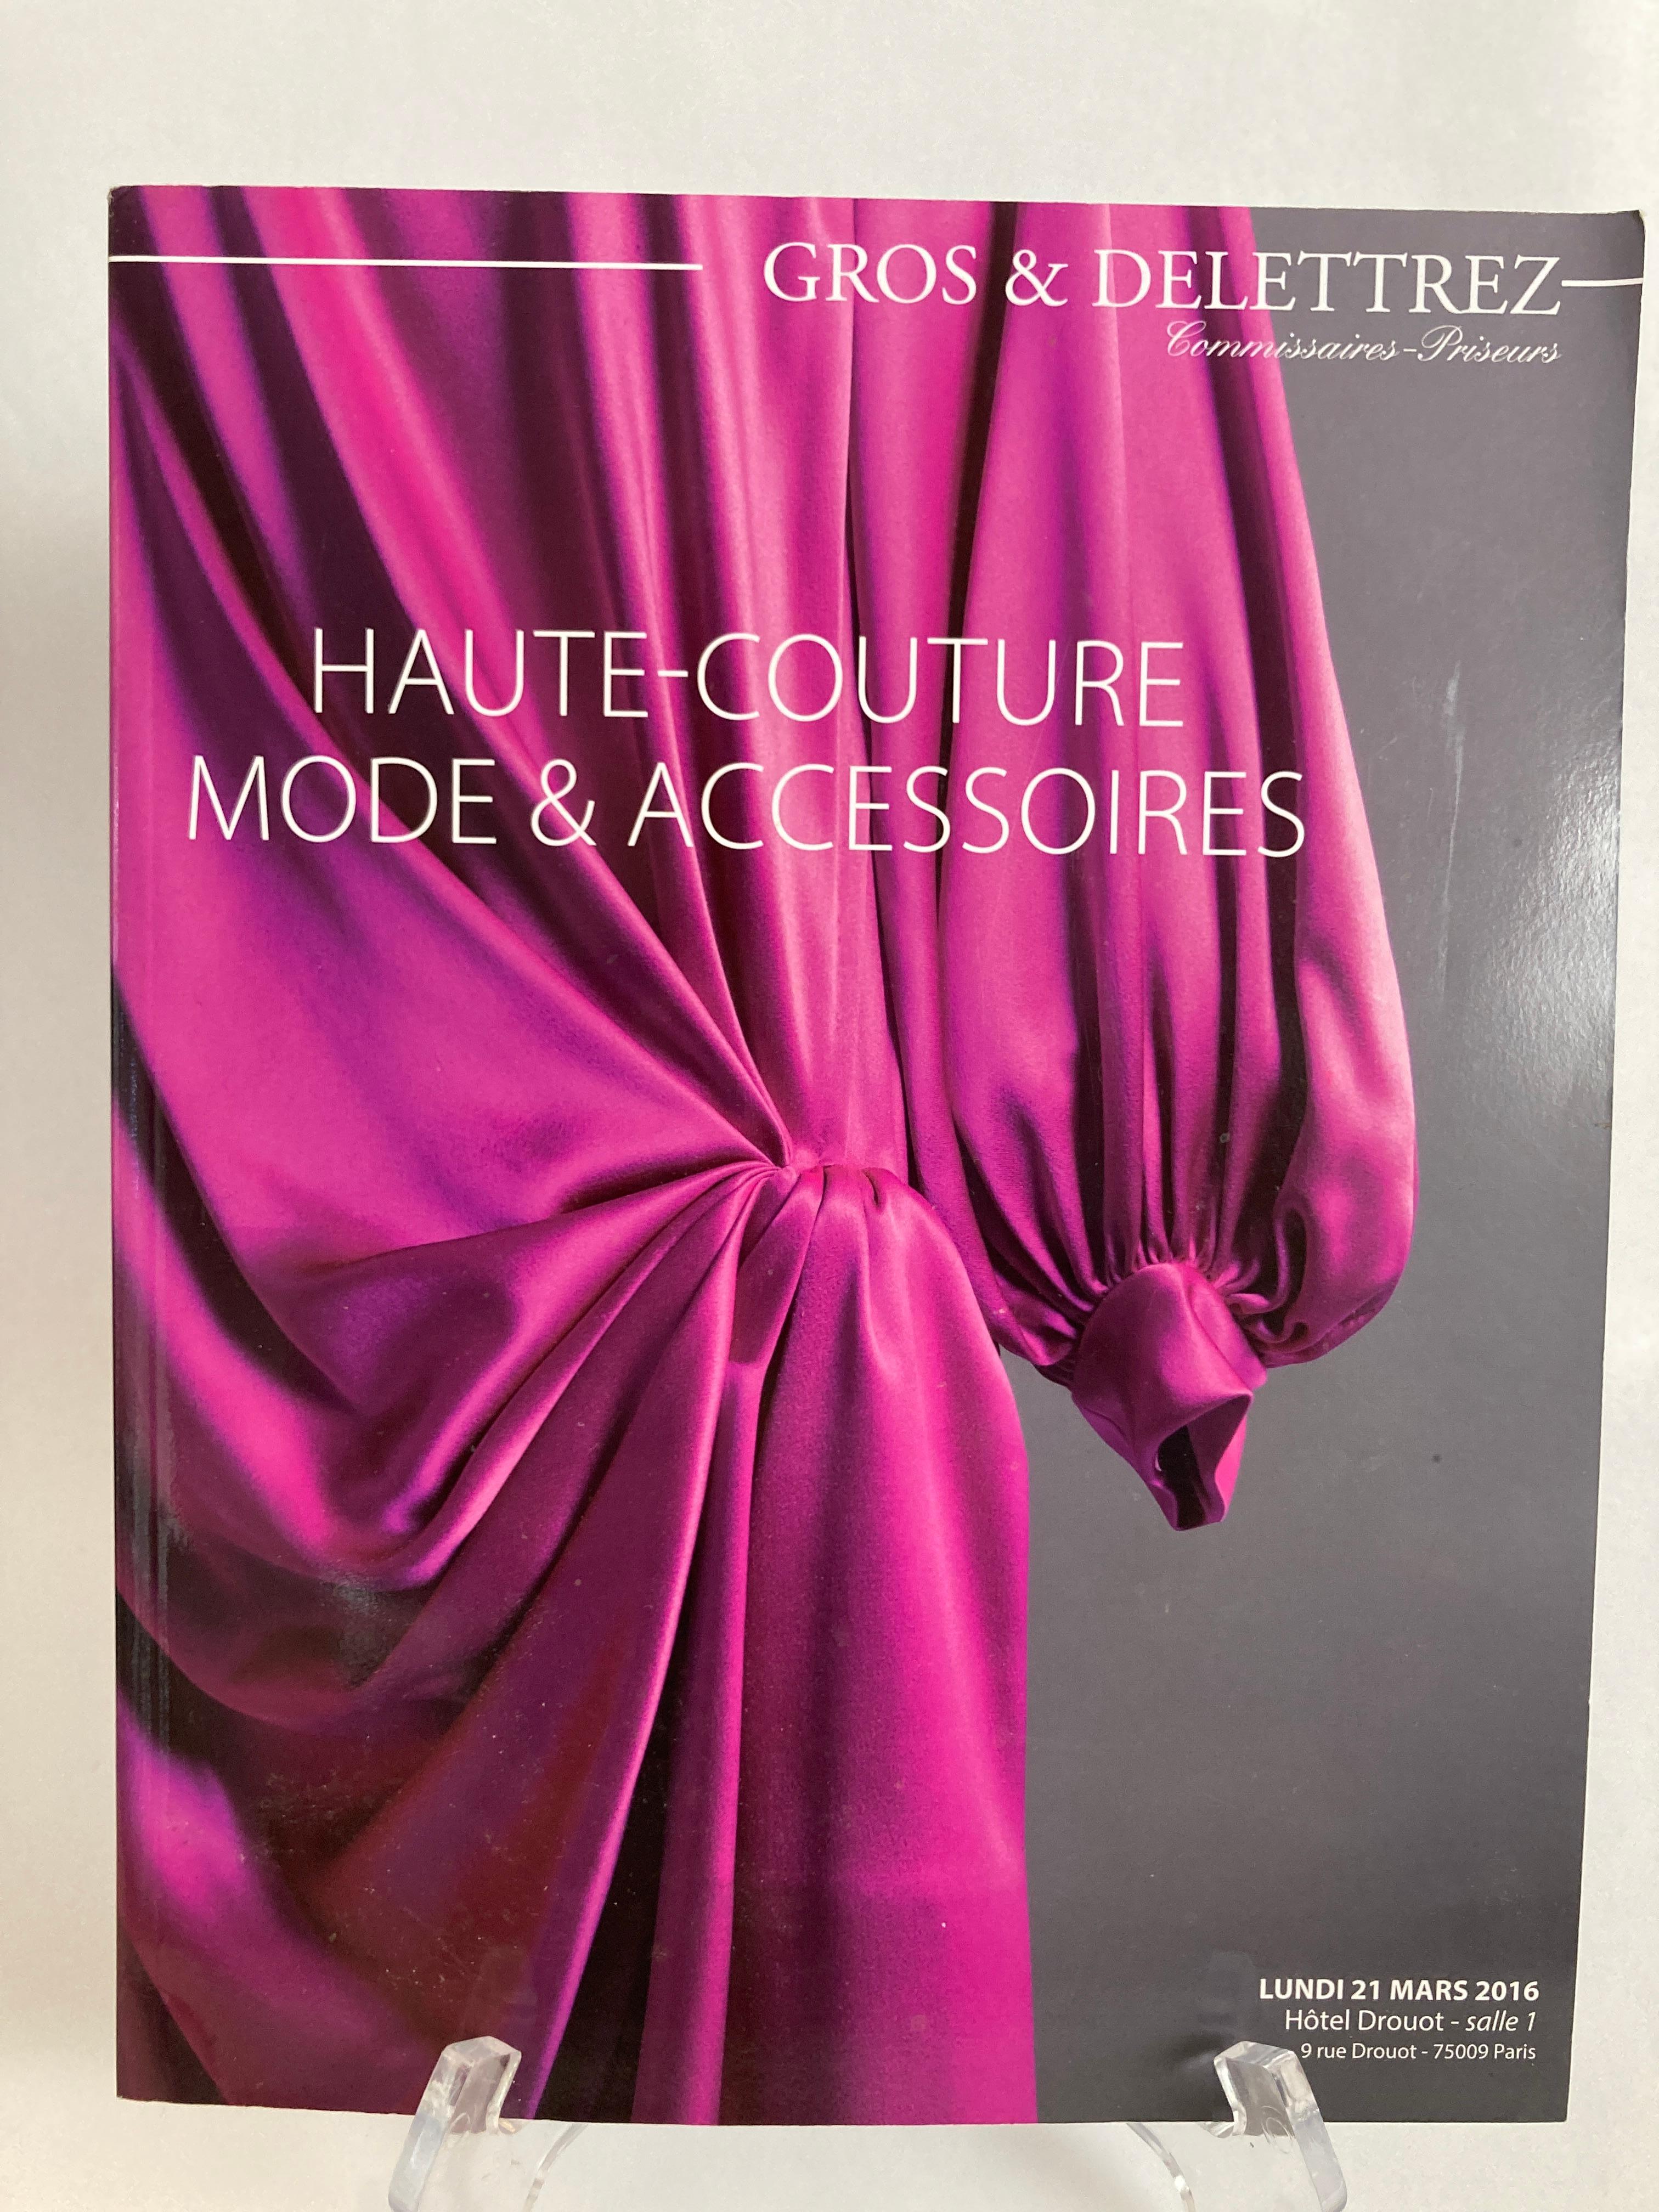 Pariser Haute Couture Auktionskatalog 2016 Herausgegeben von Gros & Delettrez,
Haute Couture Mode und Accessoires Paris Auktionskatalog 2016.
Veröffentlicht von Gros & Delettrez, 2016.
Titel: Haute Couture Mode und Accessoires Paris Auktionskatalog